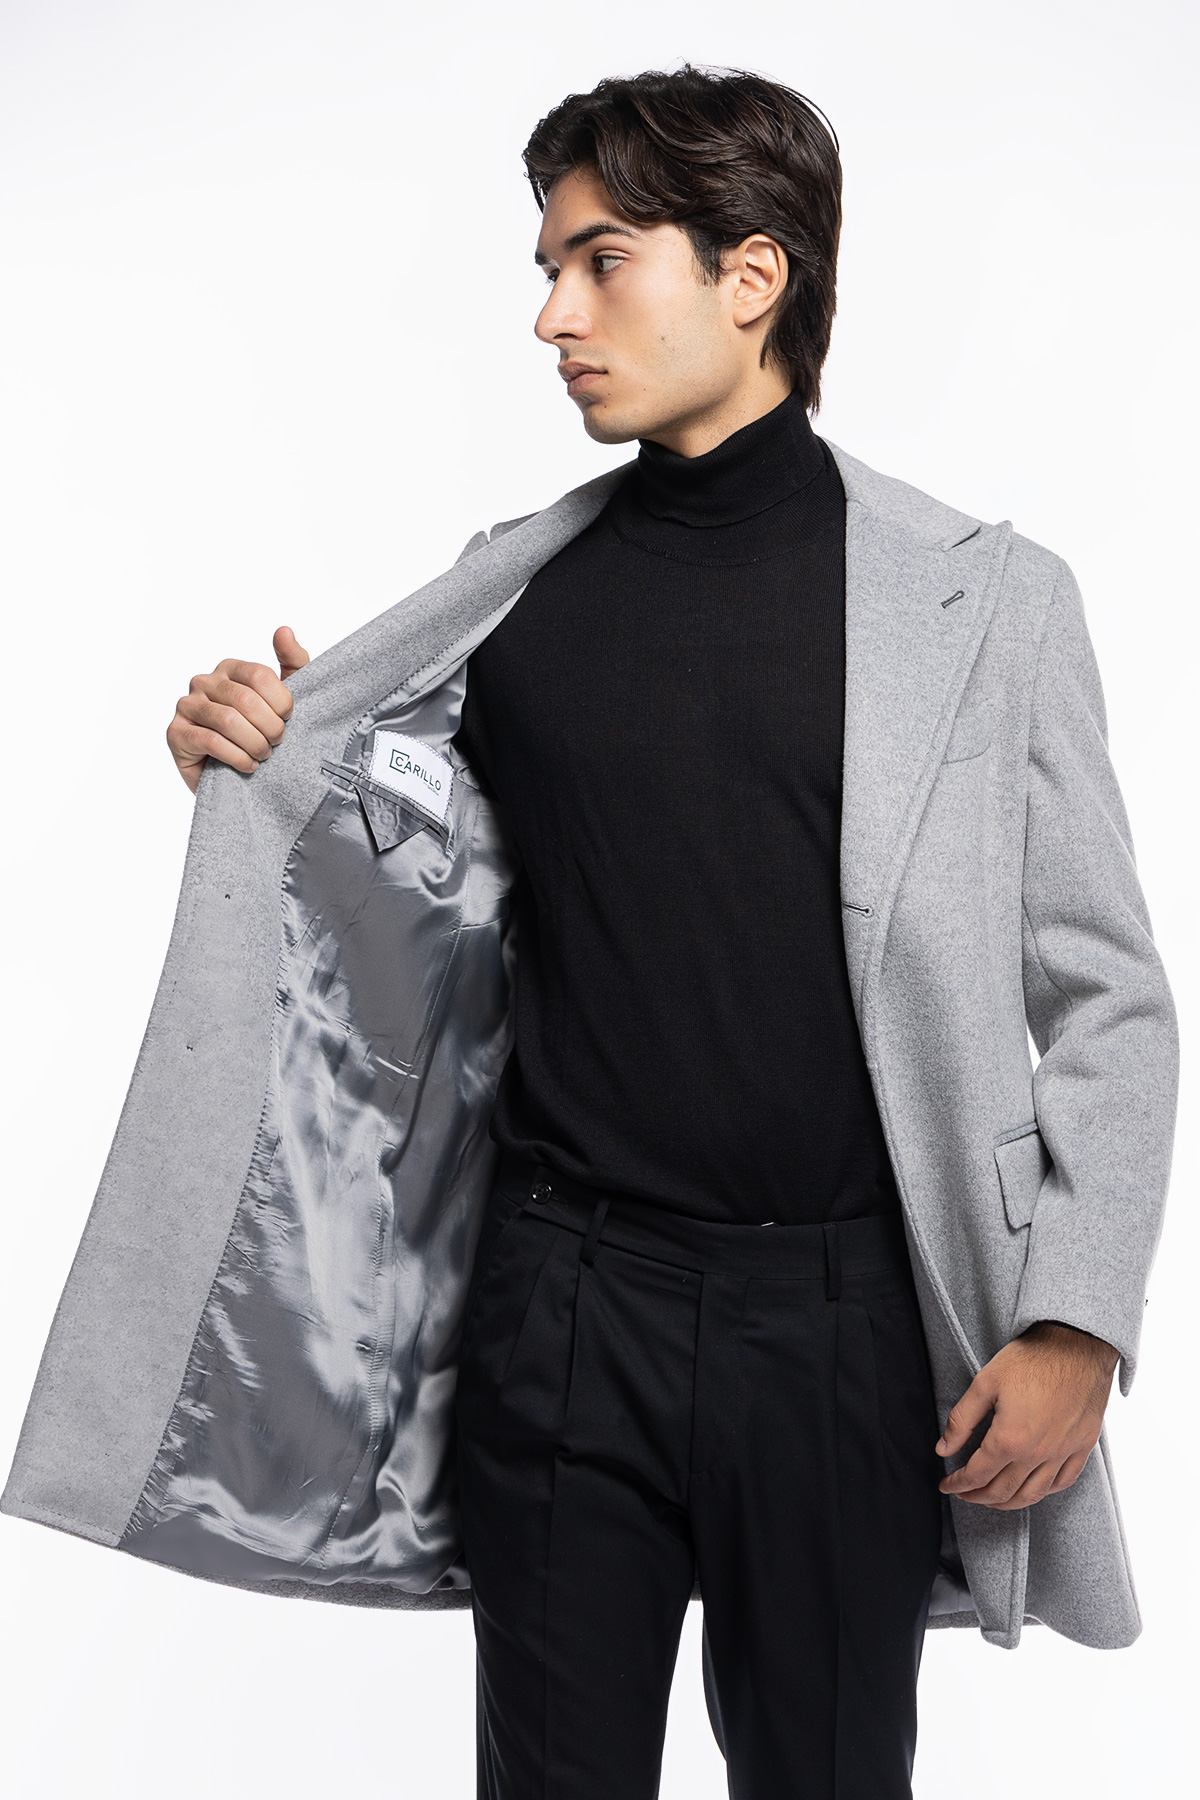 Cappotto uomo grigio chiaro monopetto con martingala sul retro e tasche a filo con pattina